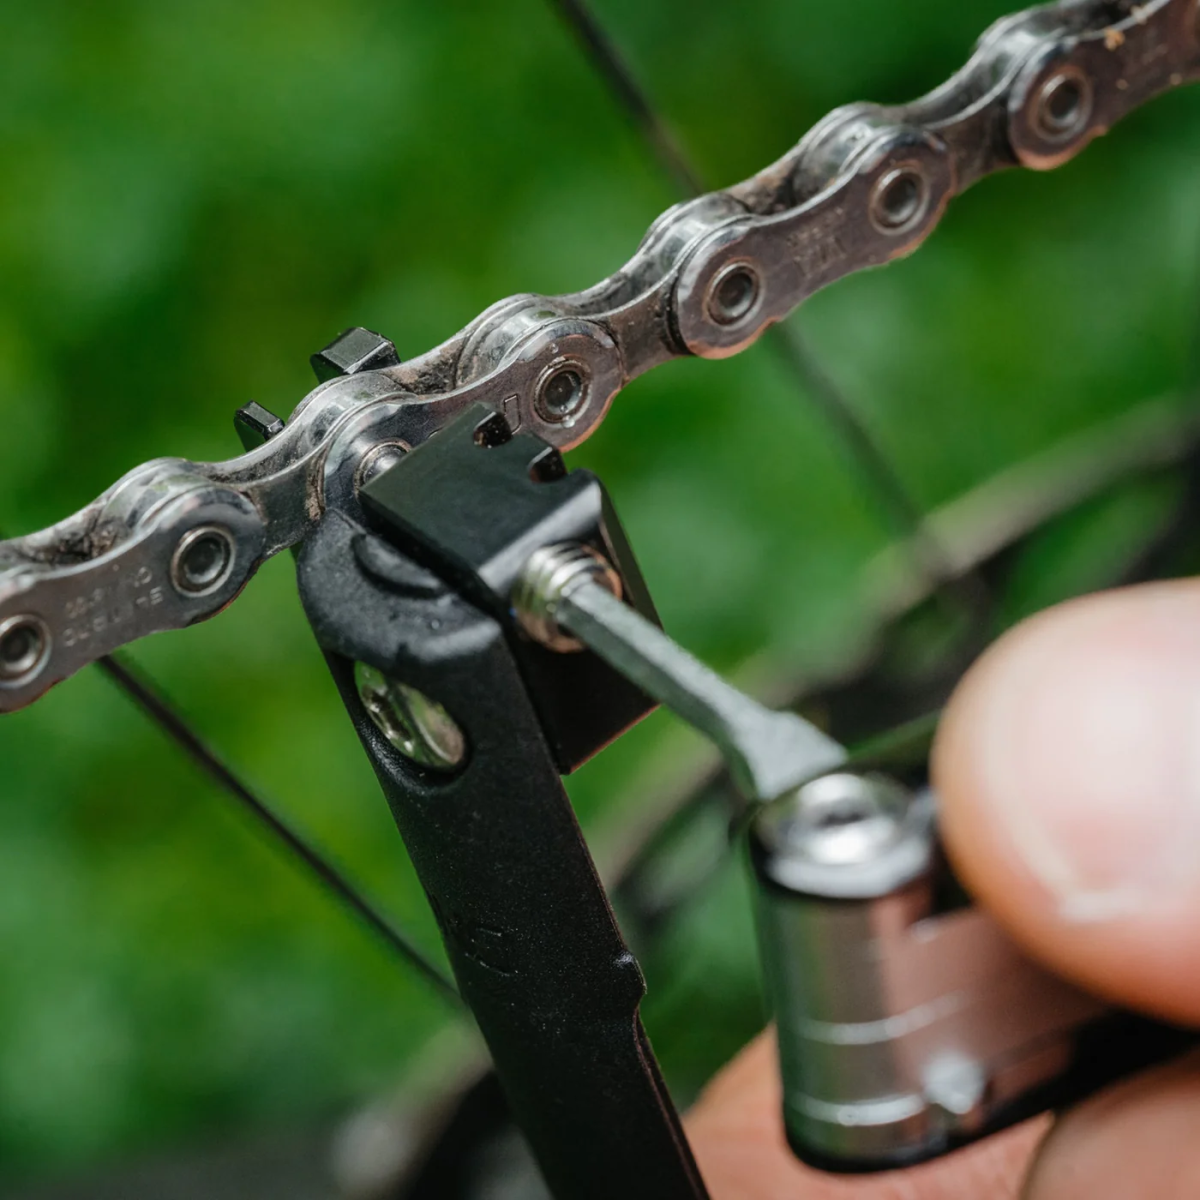 troncha cadenas del Multi herramientas escondido en el tubo de la dirección de bicicleta One Up EDC V2 Tool